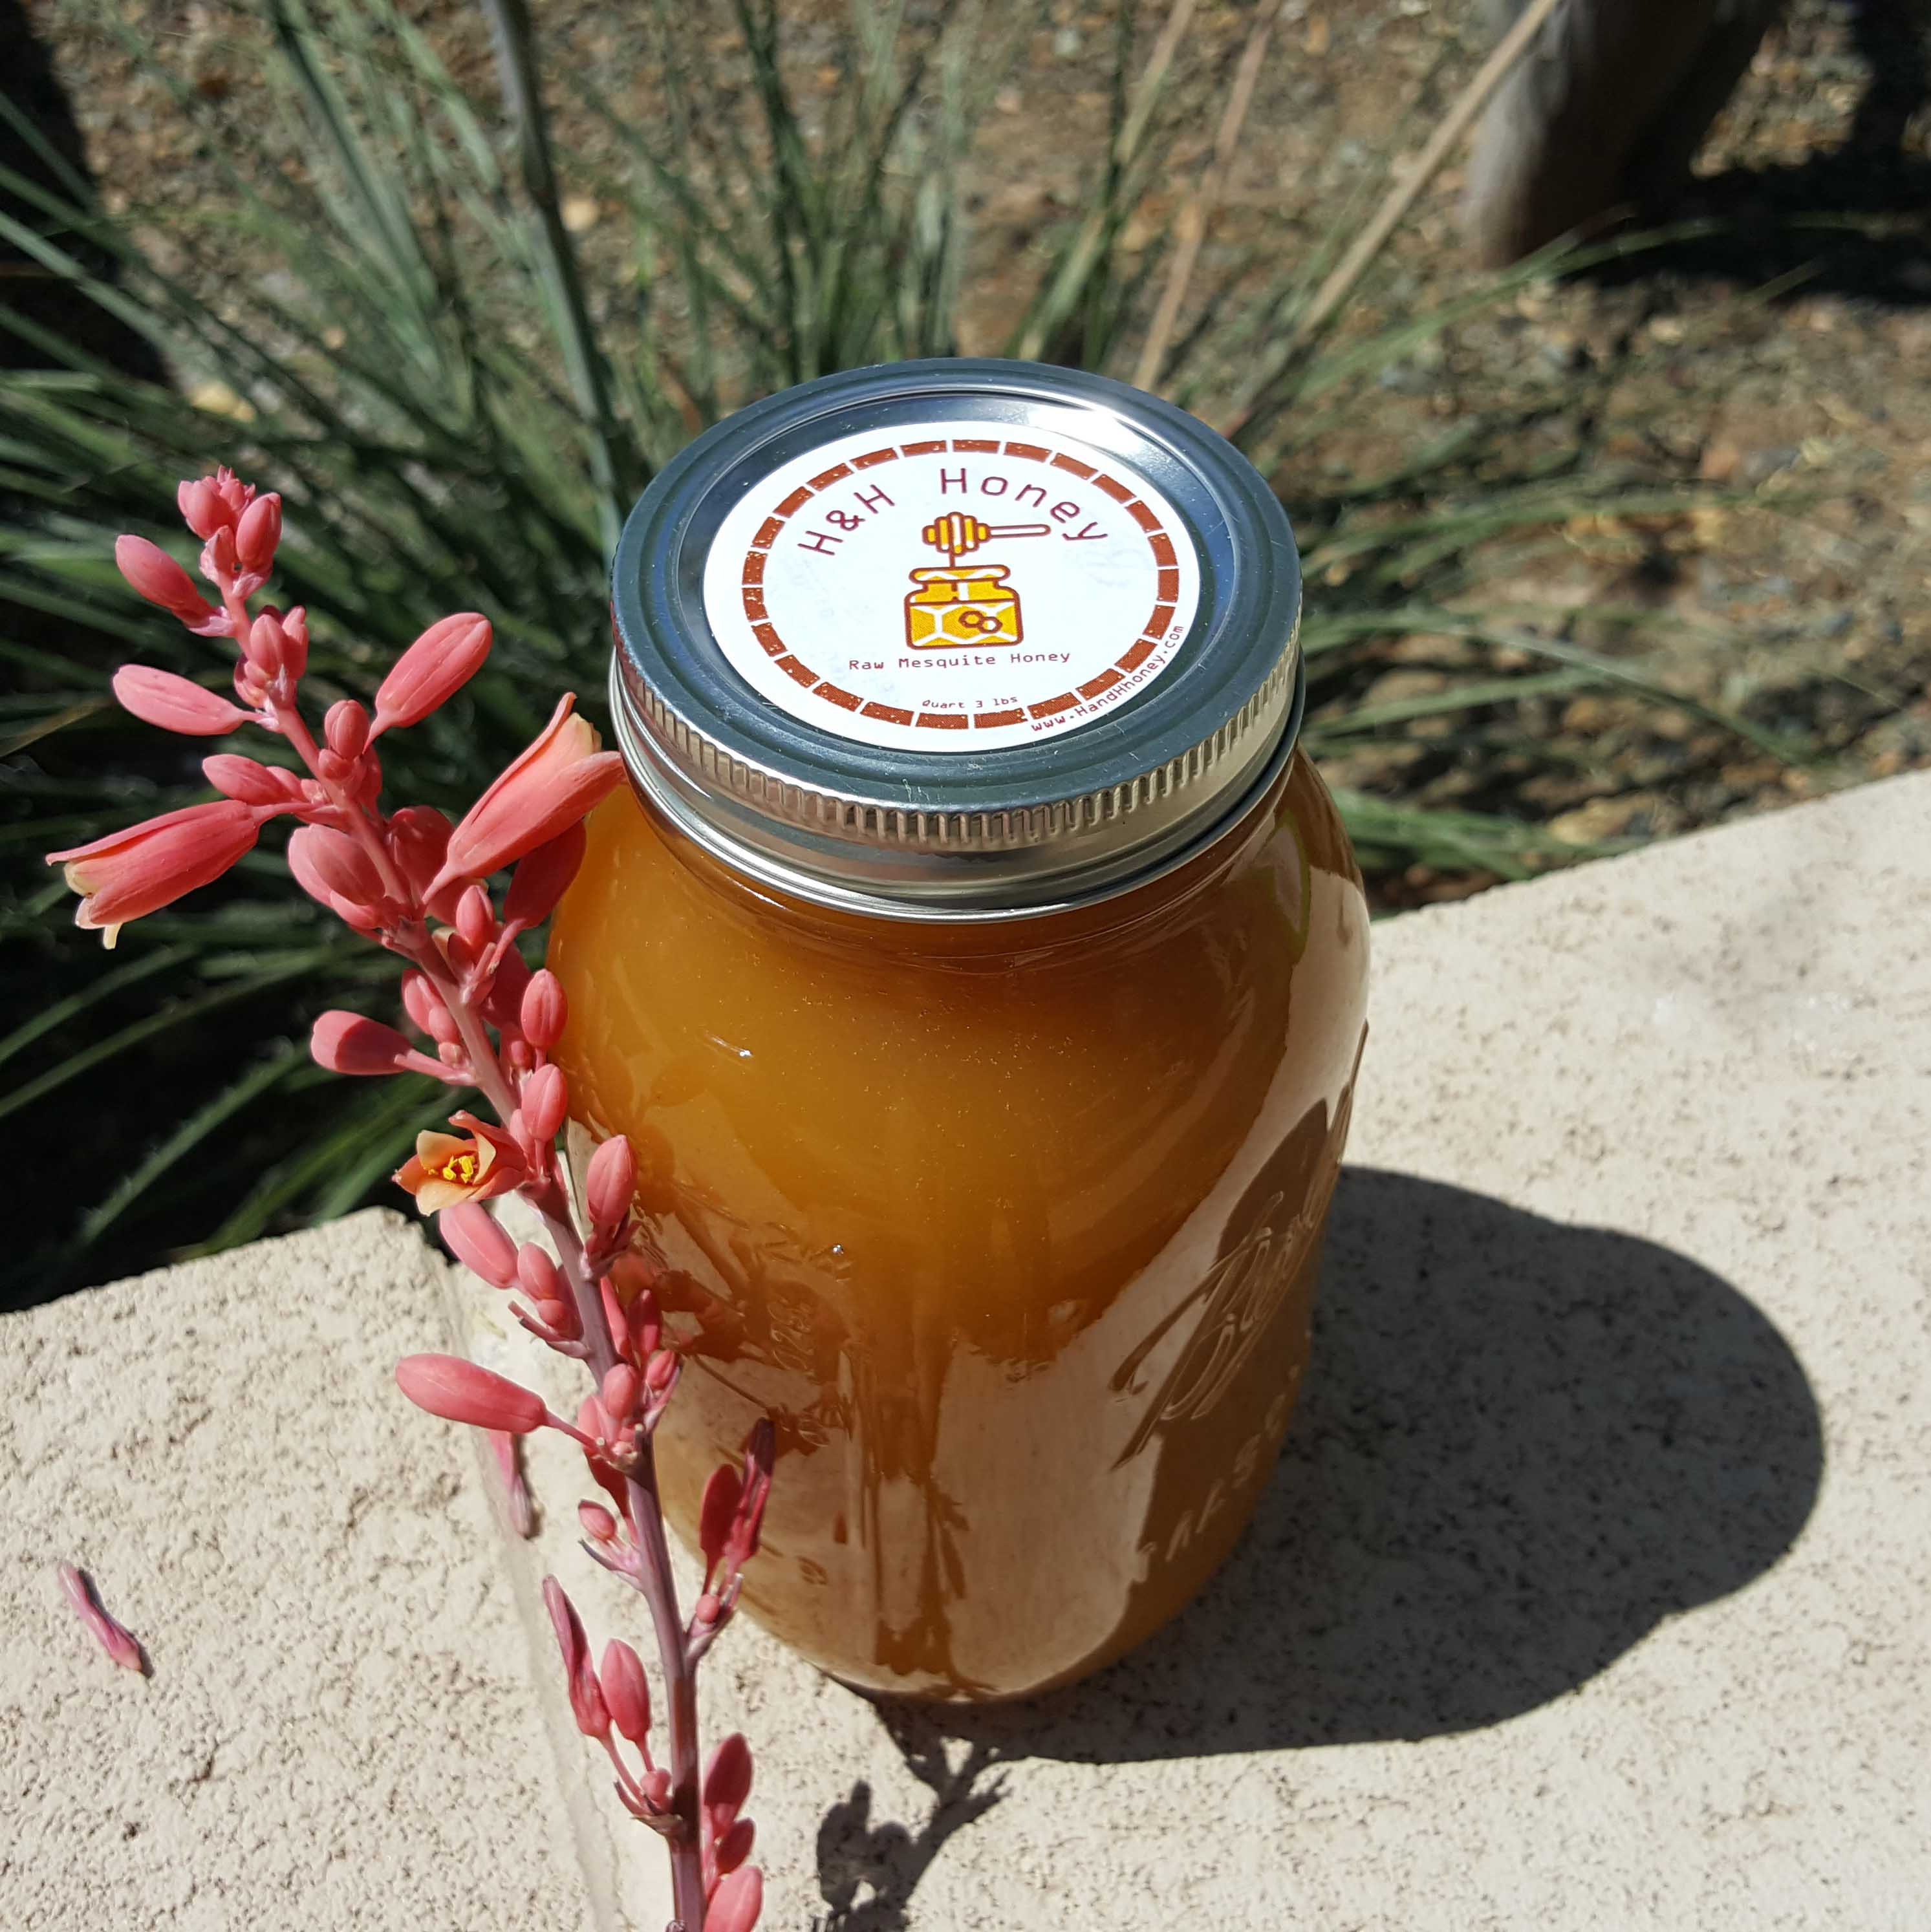 Buy Arizona Mesquite honey